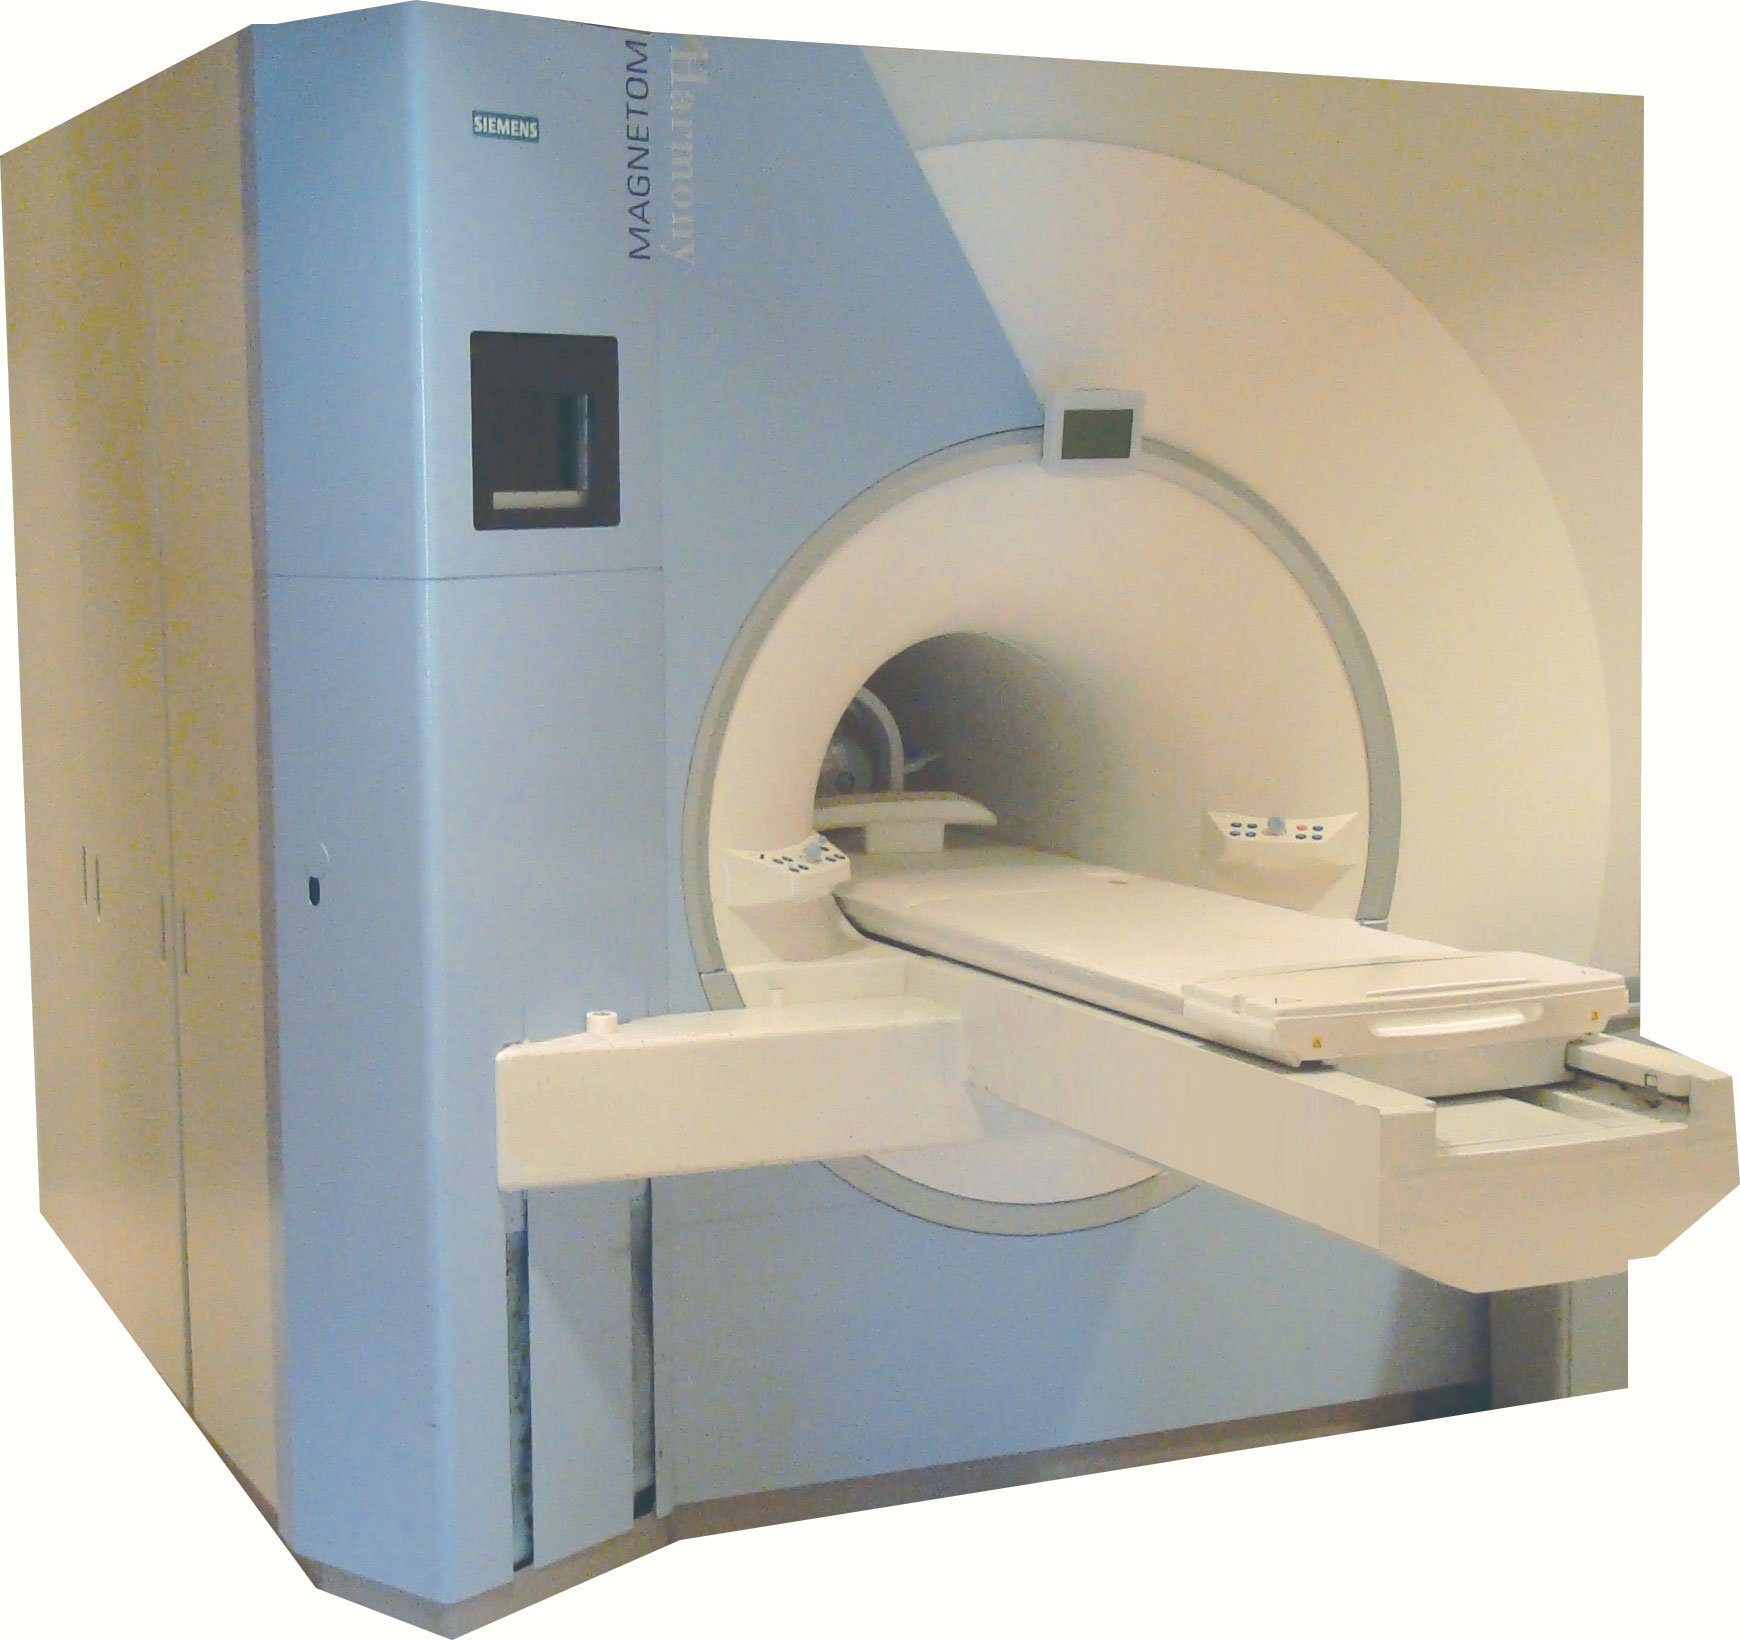 Siemens Harmony MRI